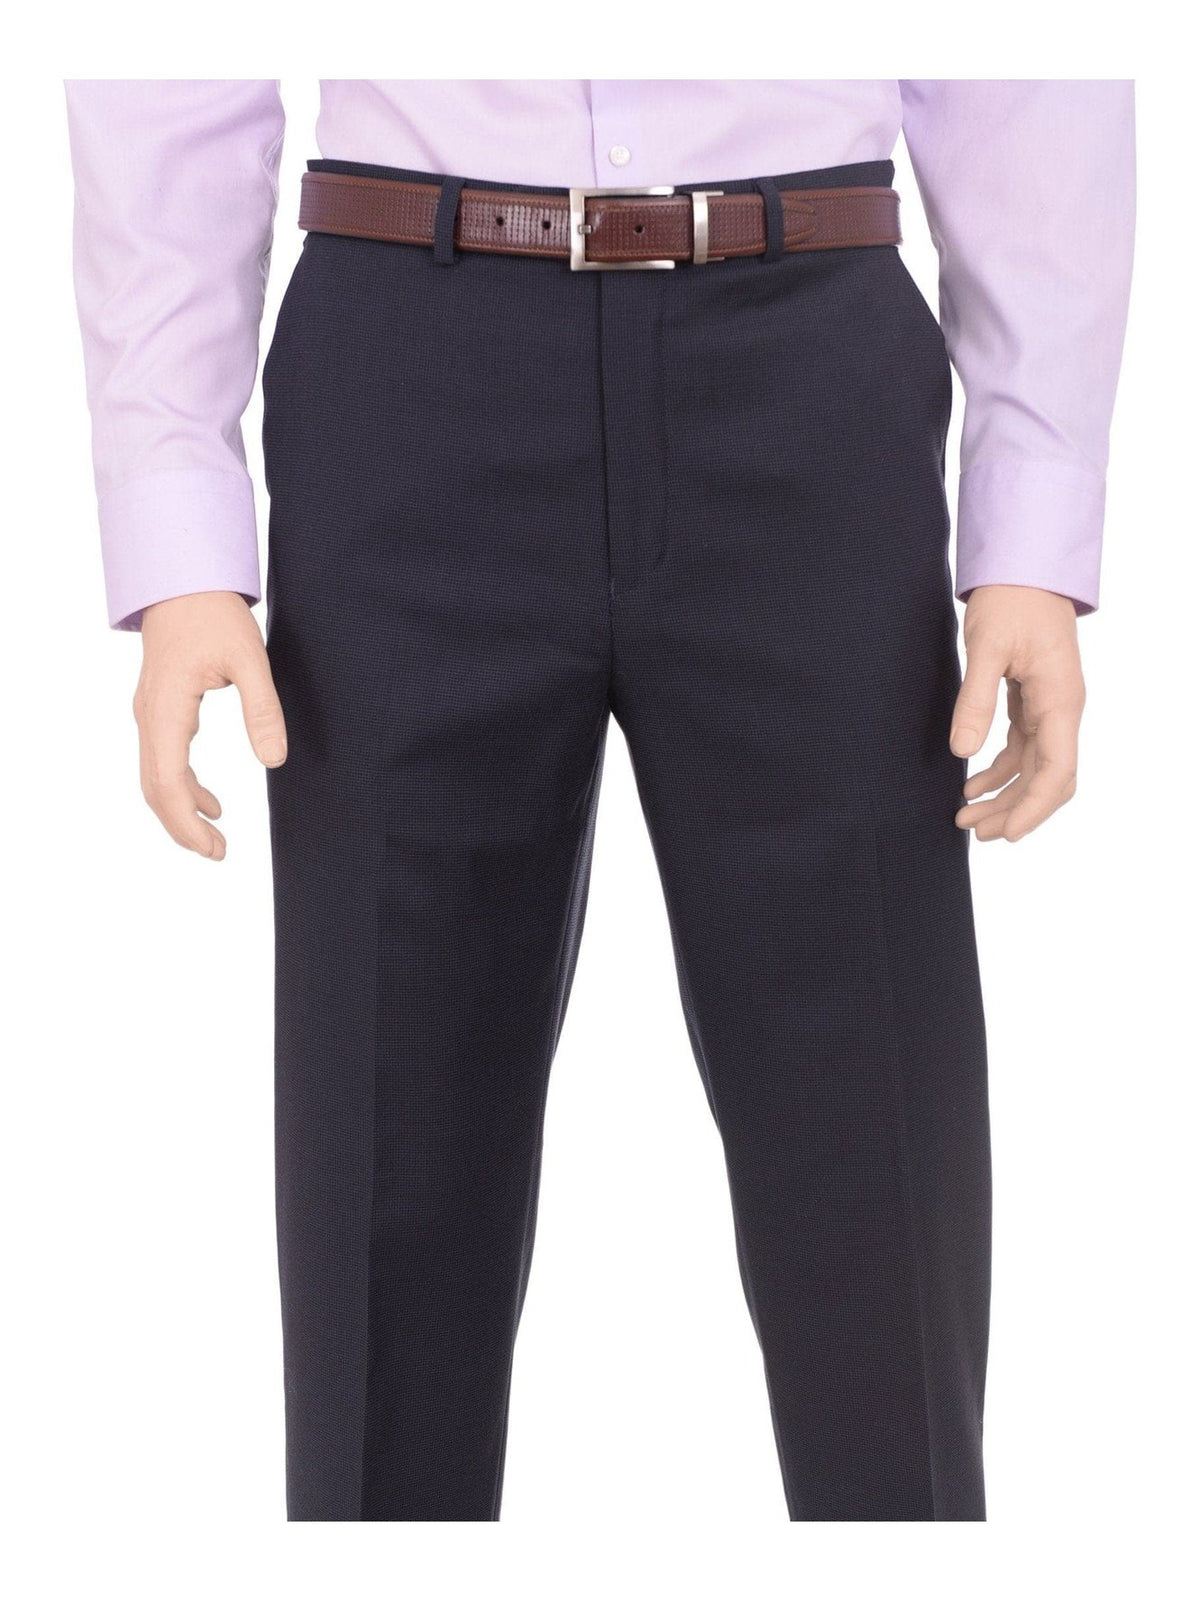 Michael Kors Regular Fit Blue Mini Check Flat Front Washable Dress Pants - The Suit Depot